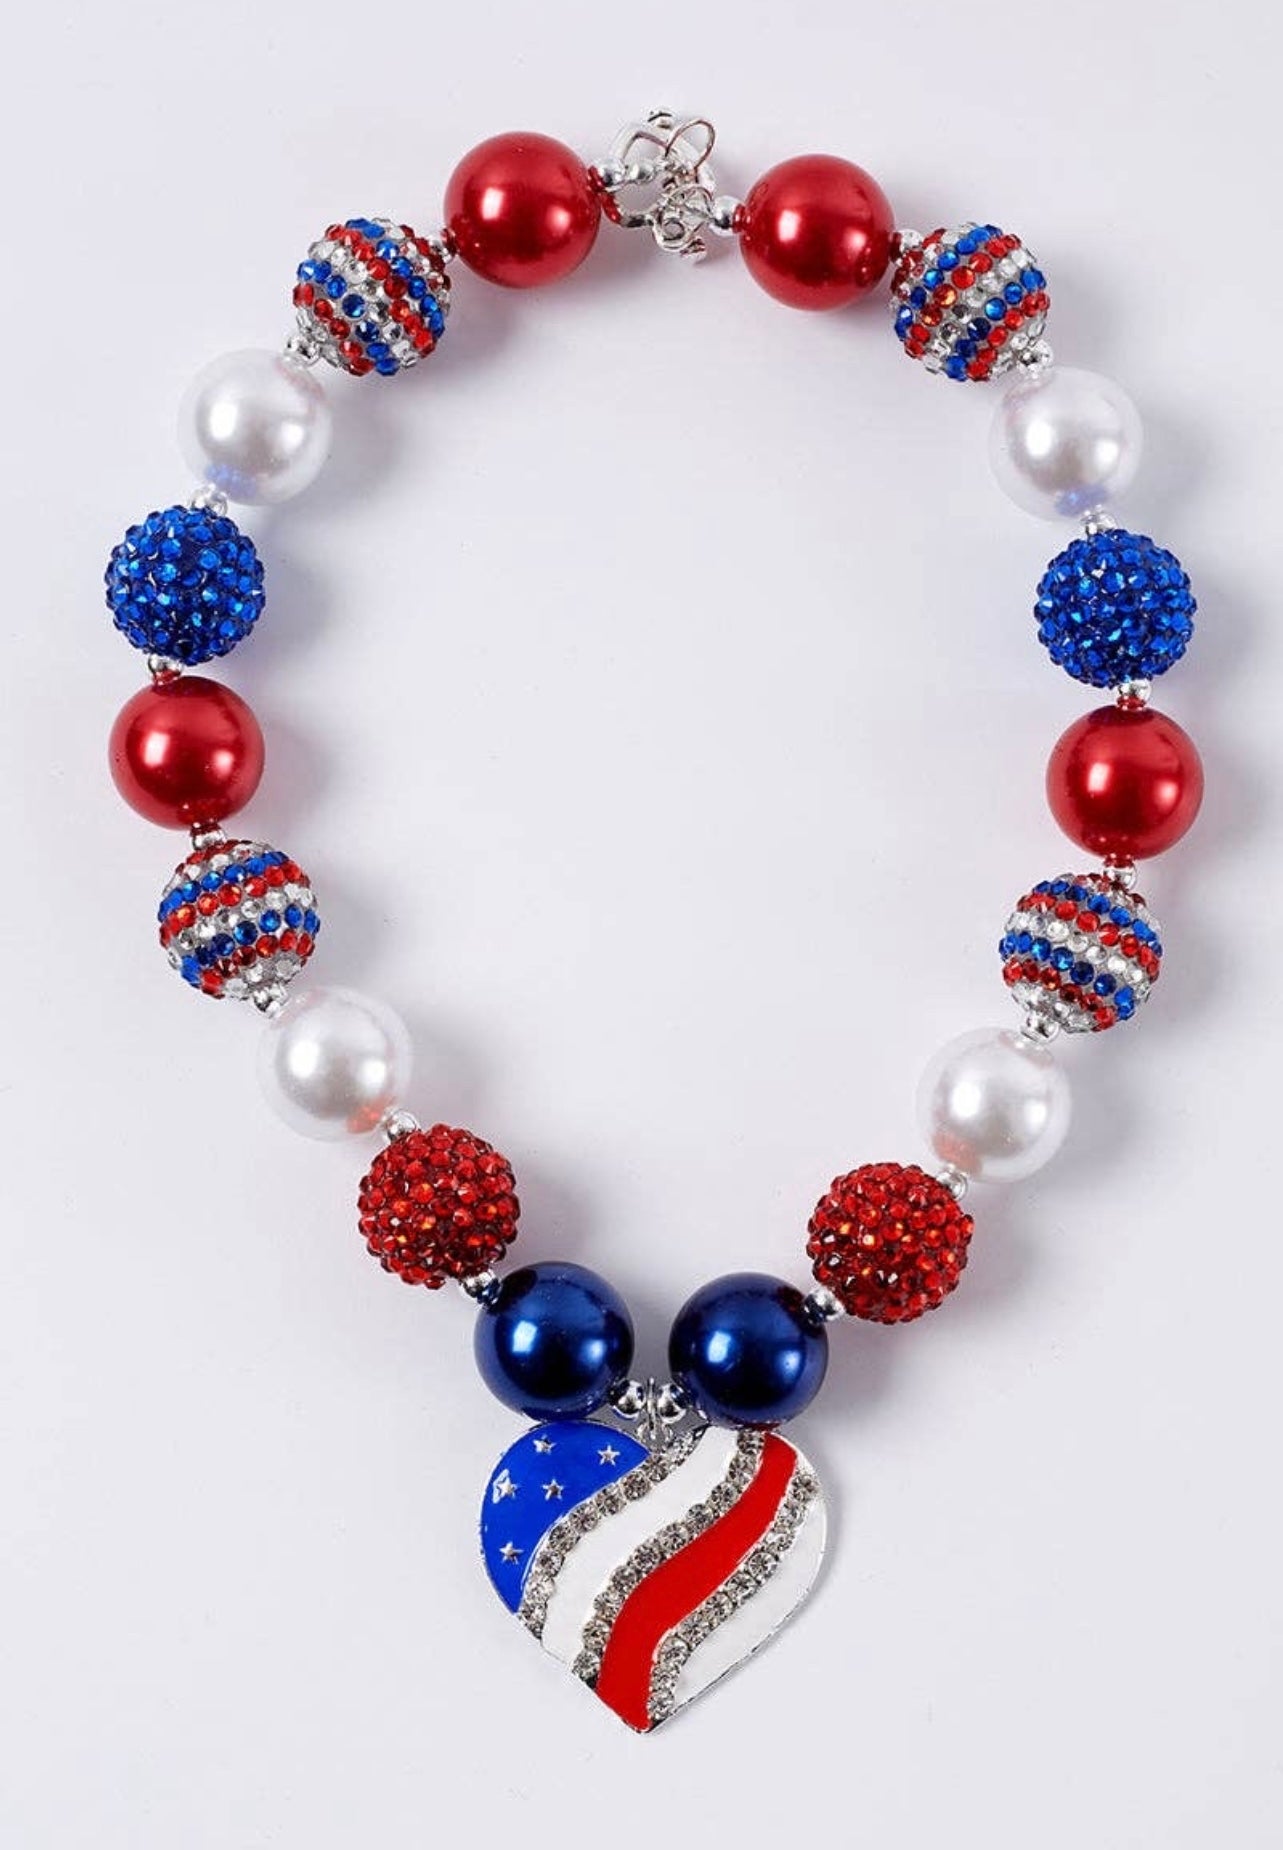 Patriotic necklace